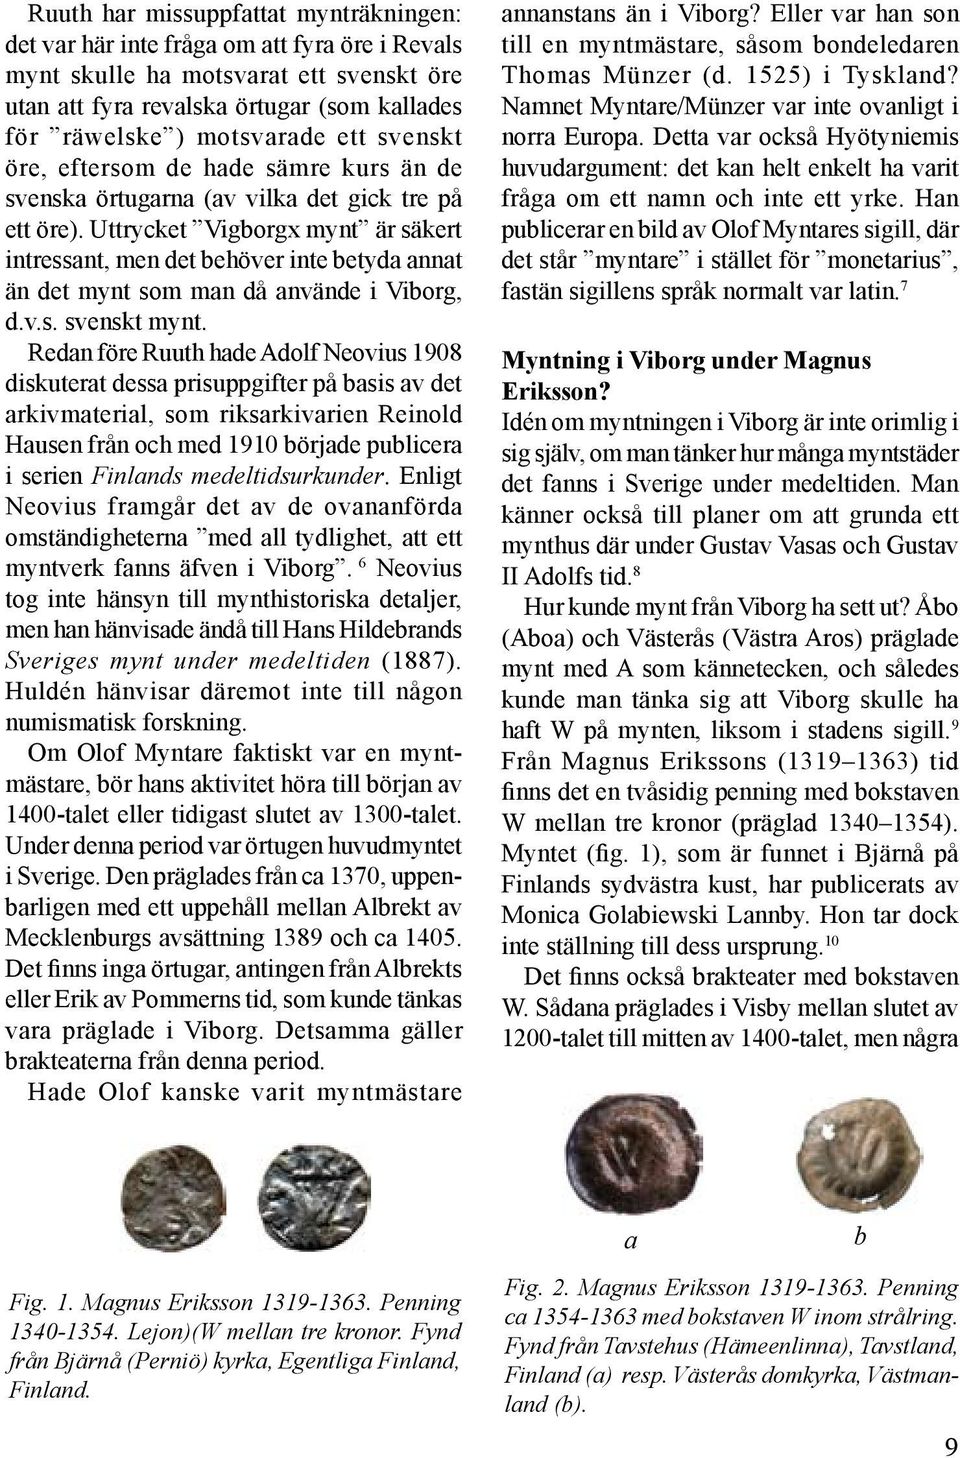 Uttrycket Vigborgx mynt är säkert intressant, men det behöver inte betyda annat än det mynt som man då använde i Viborg, d.v.s. svenskt mynt.